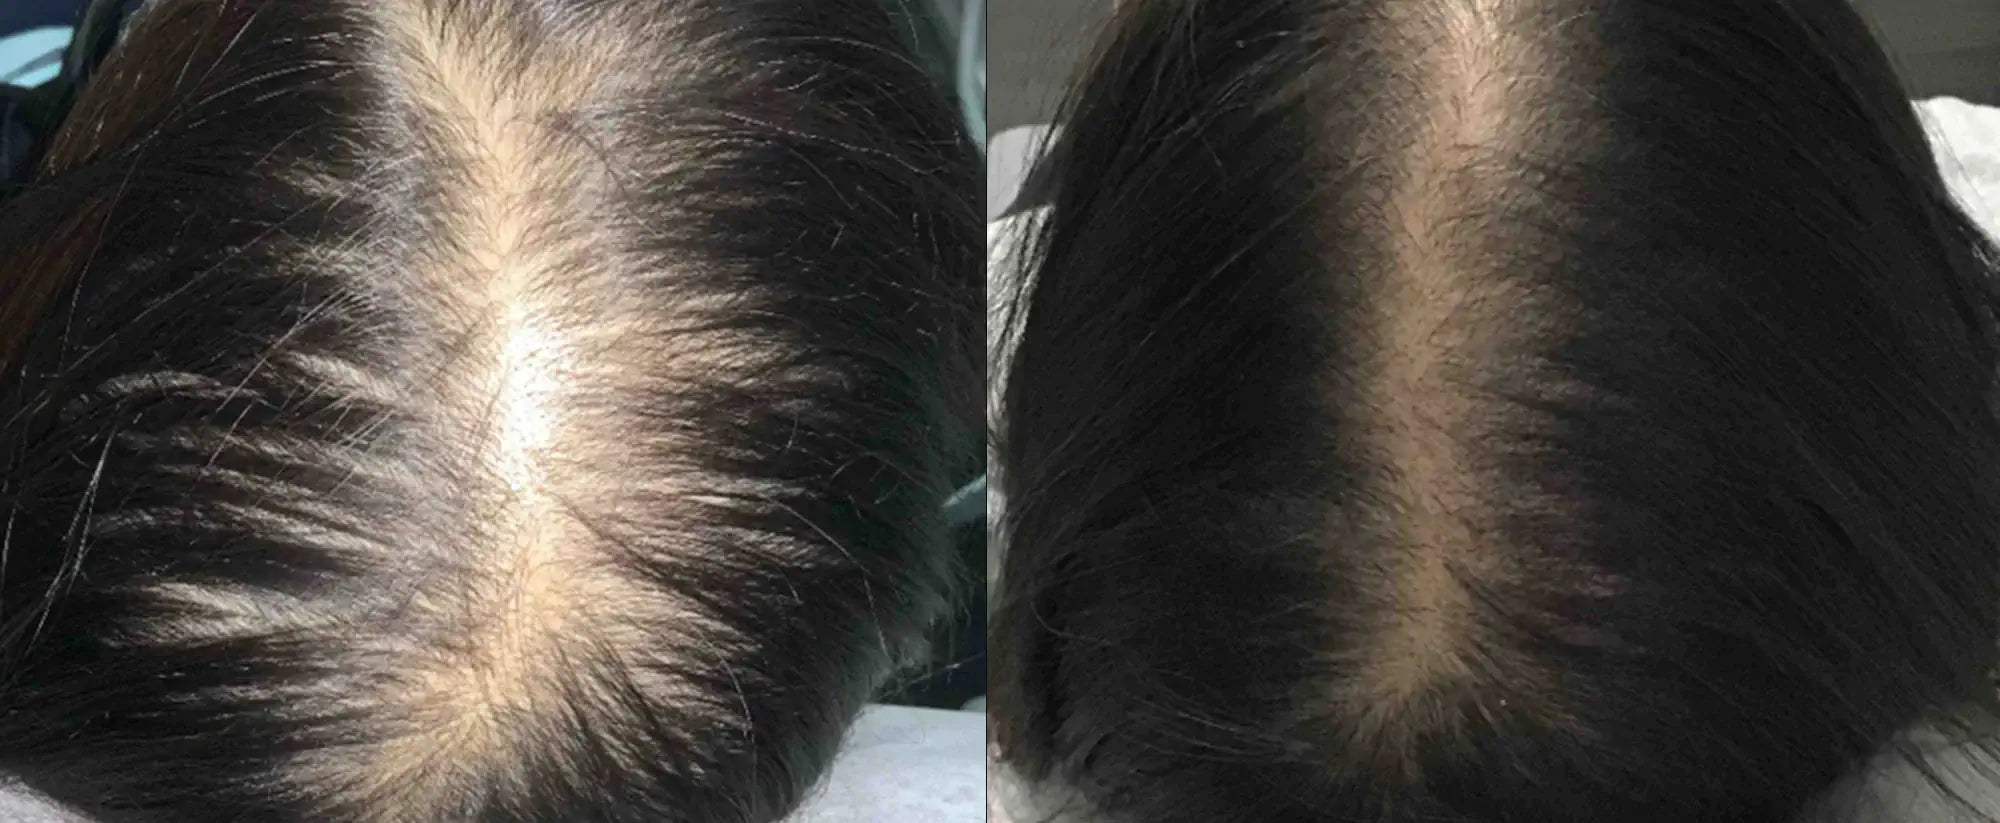 Neoffolics suppléments pour la perte de cheveux - 100 capsules